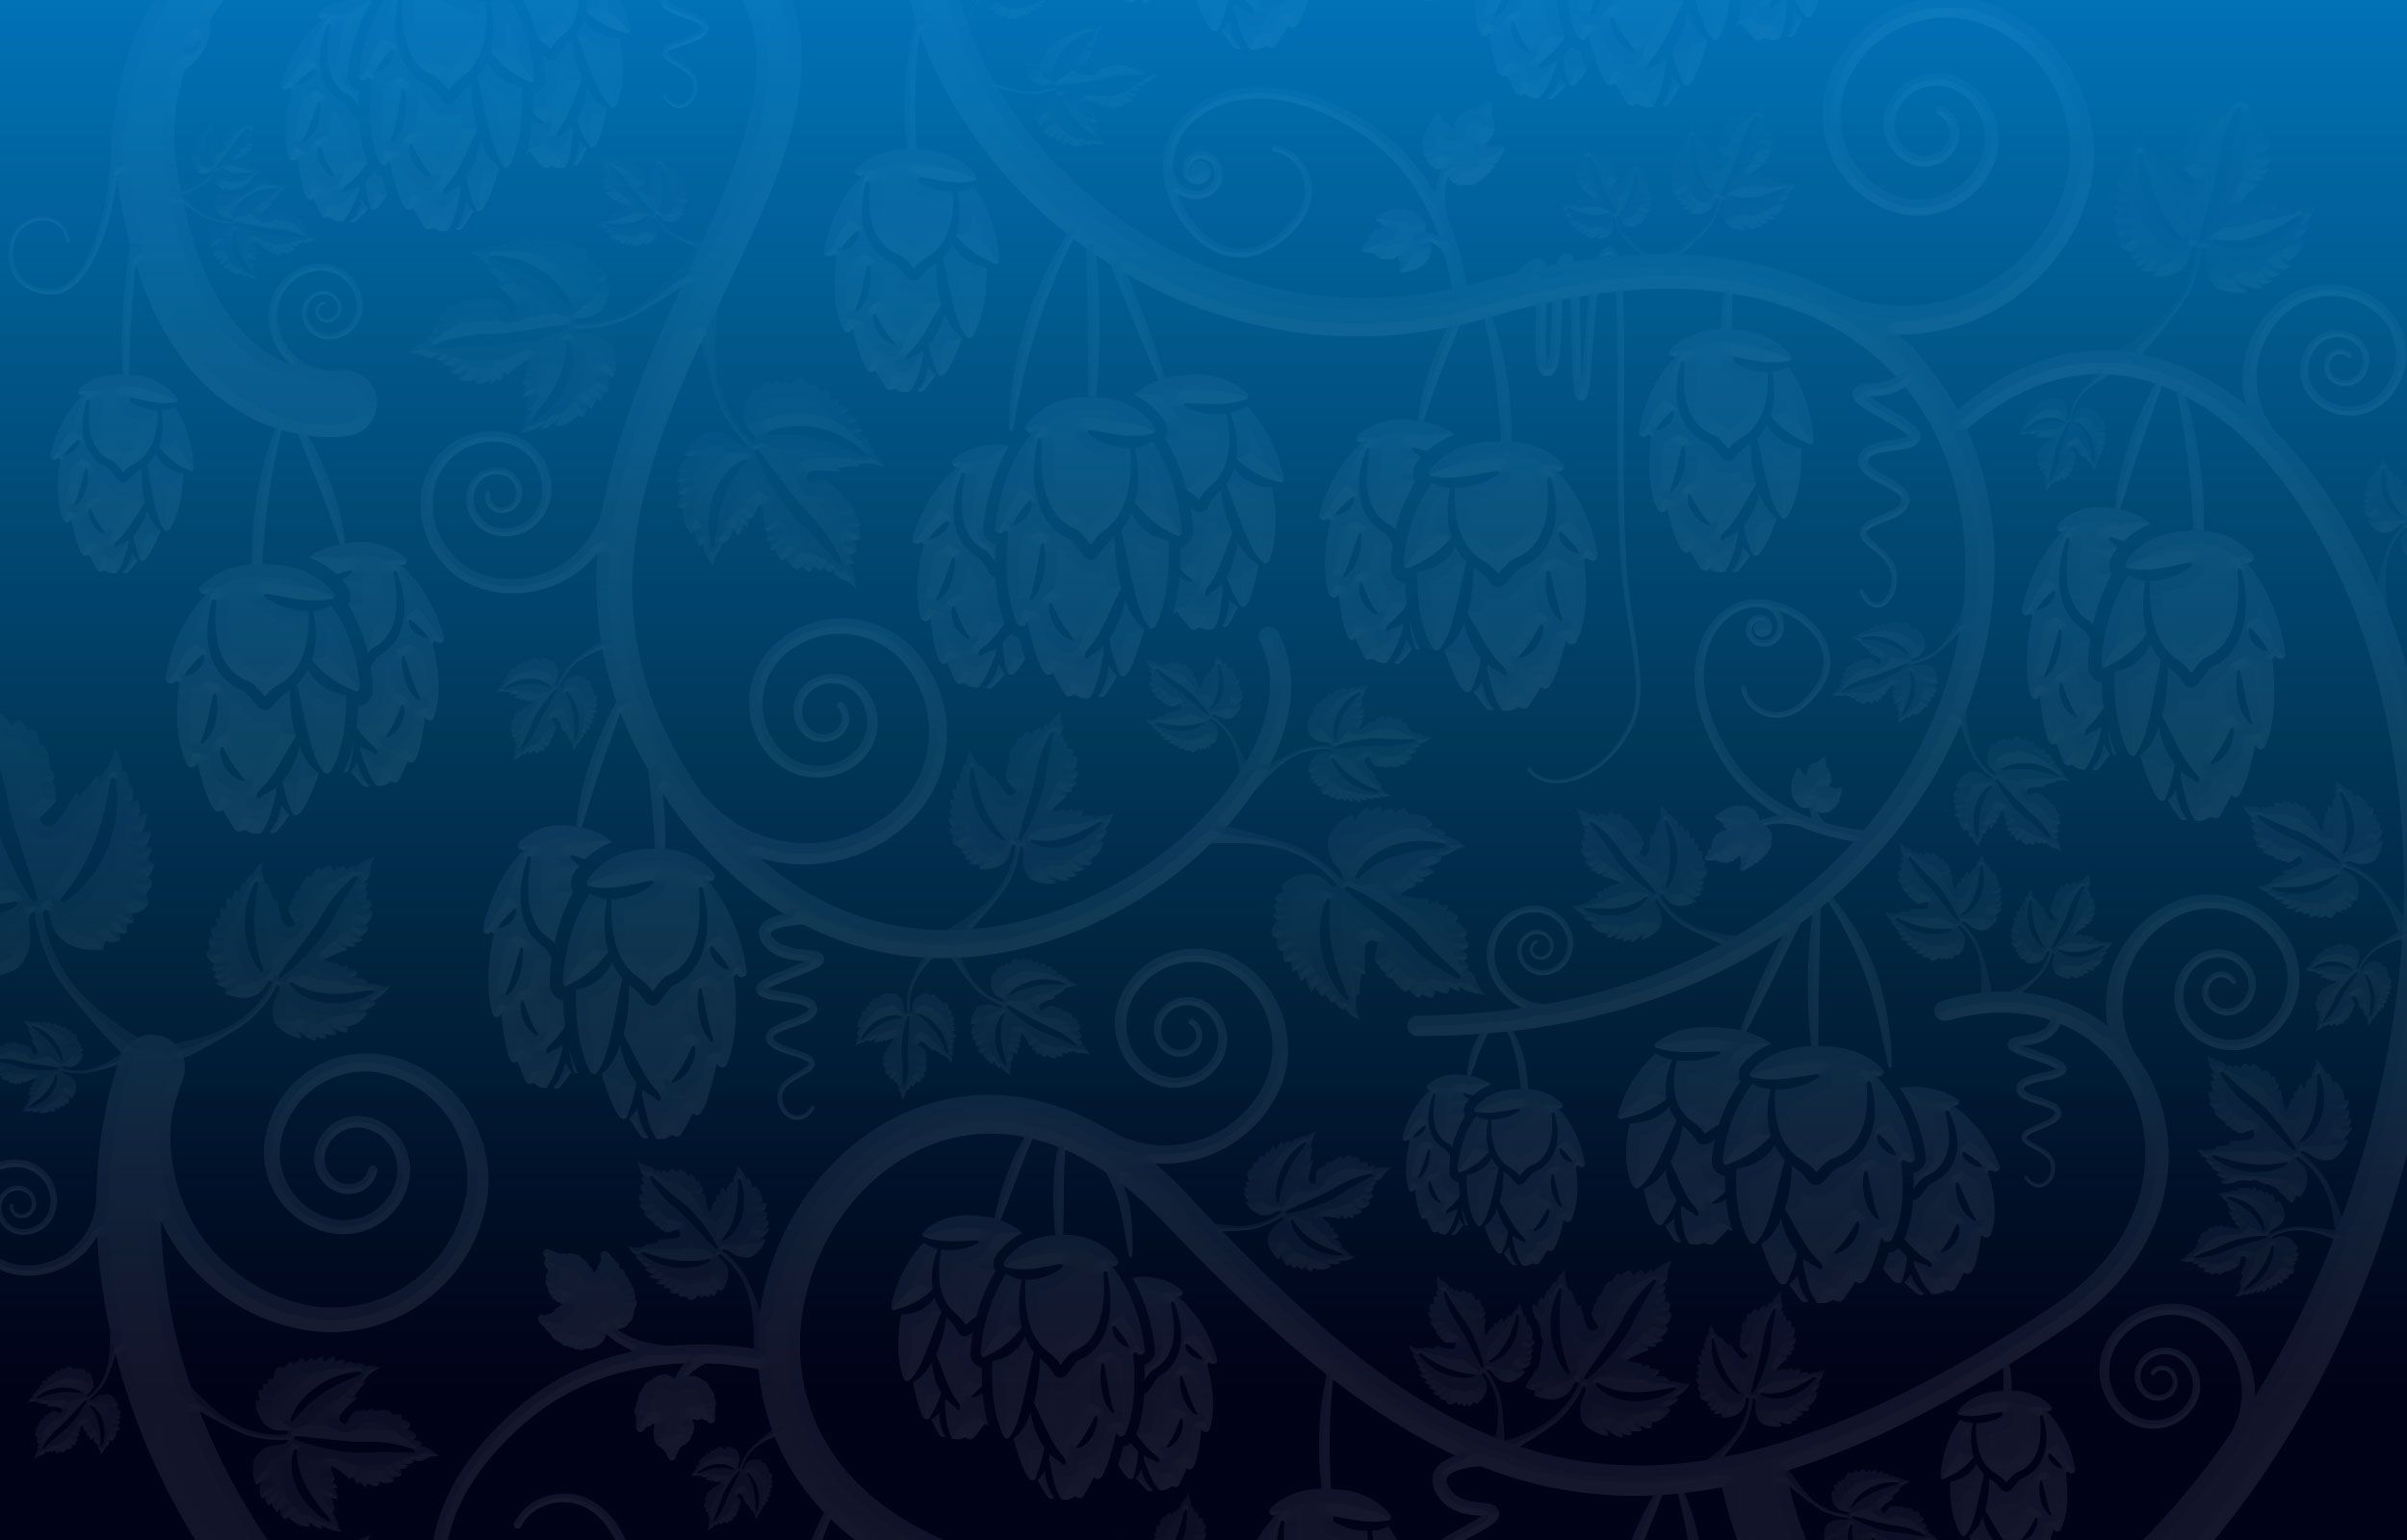 Blue vine pattern background